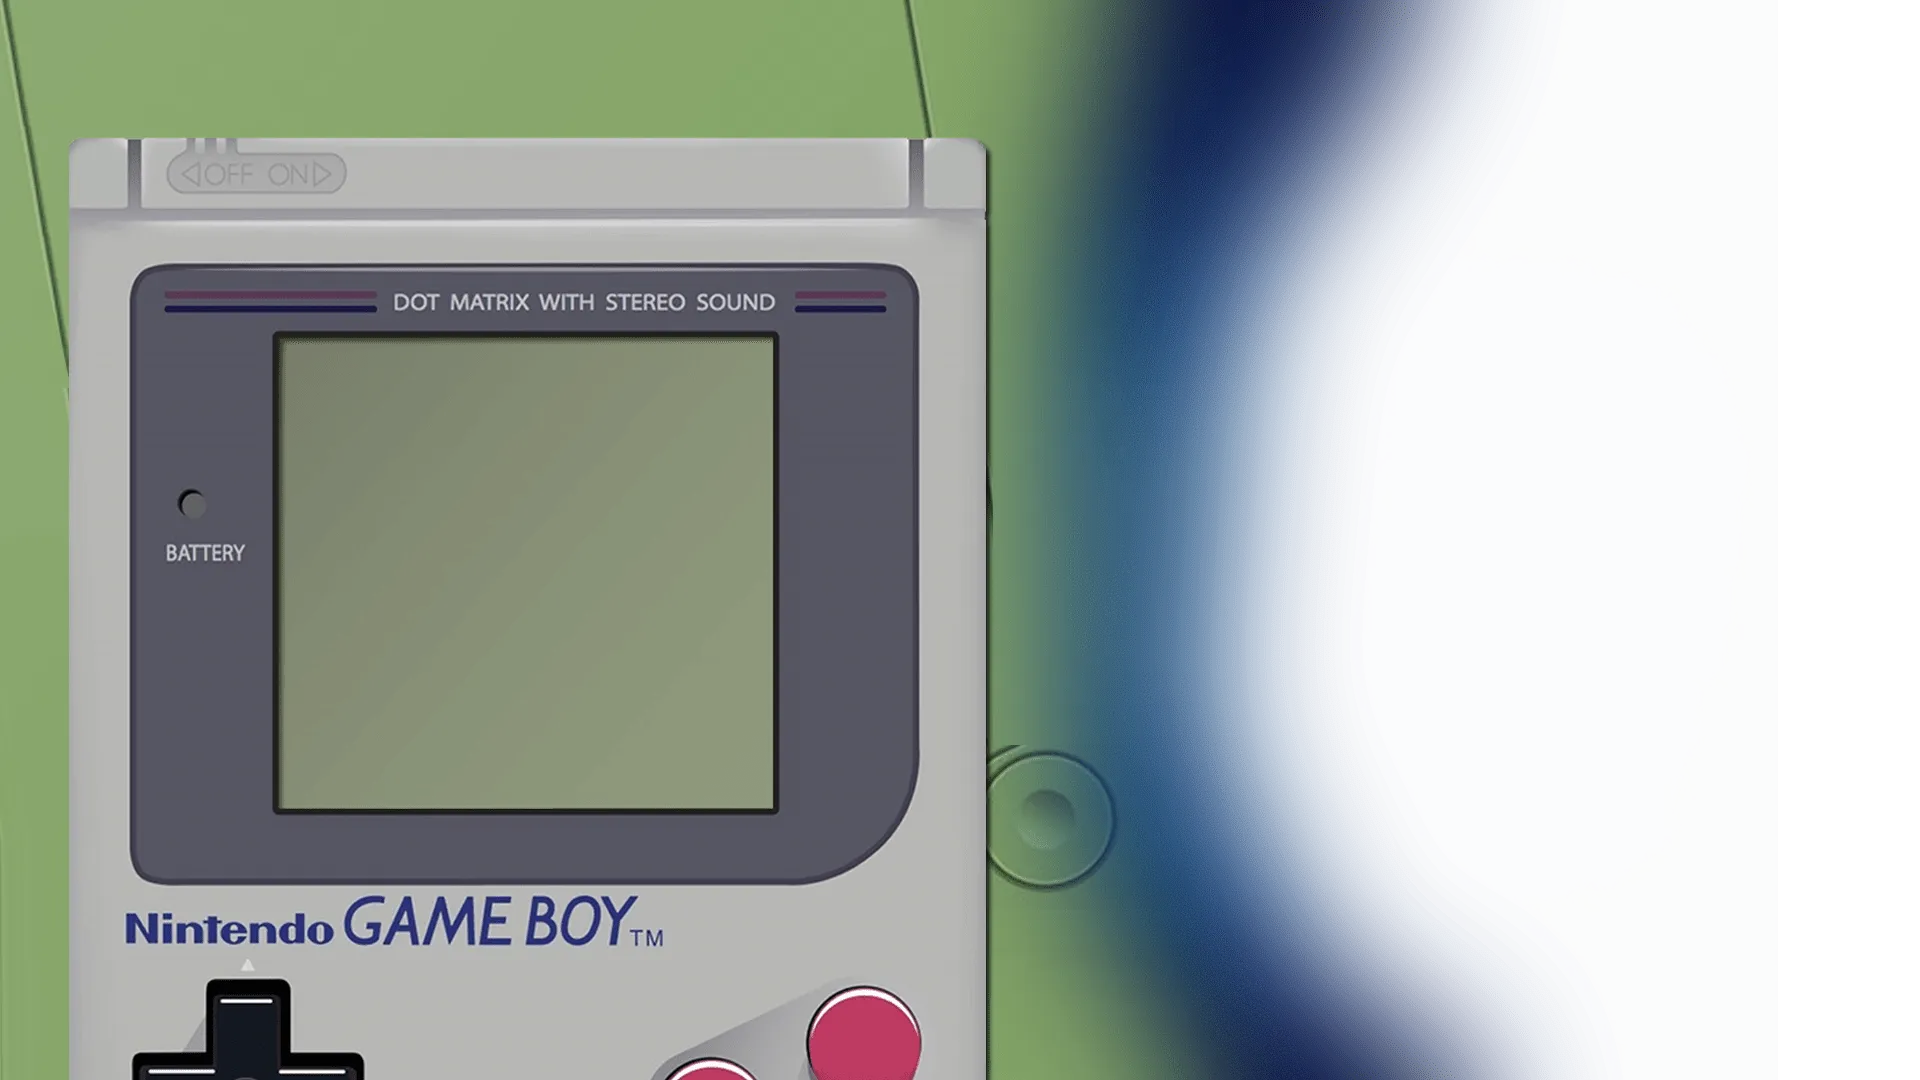 Emulator background image